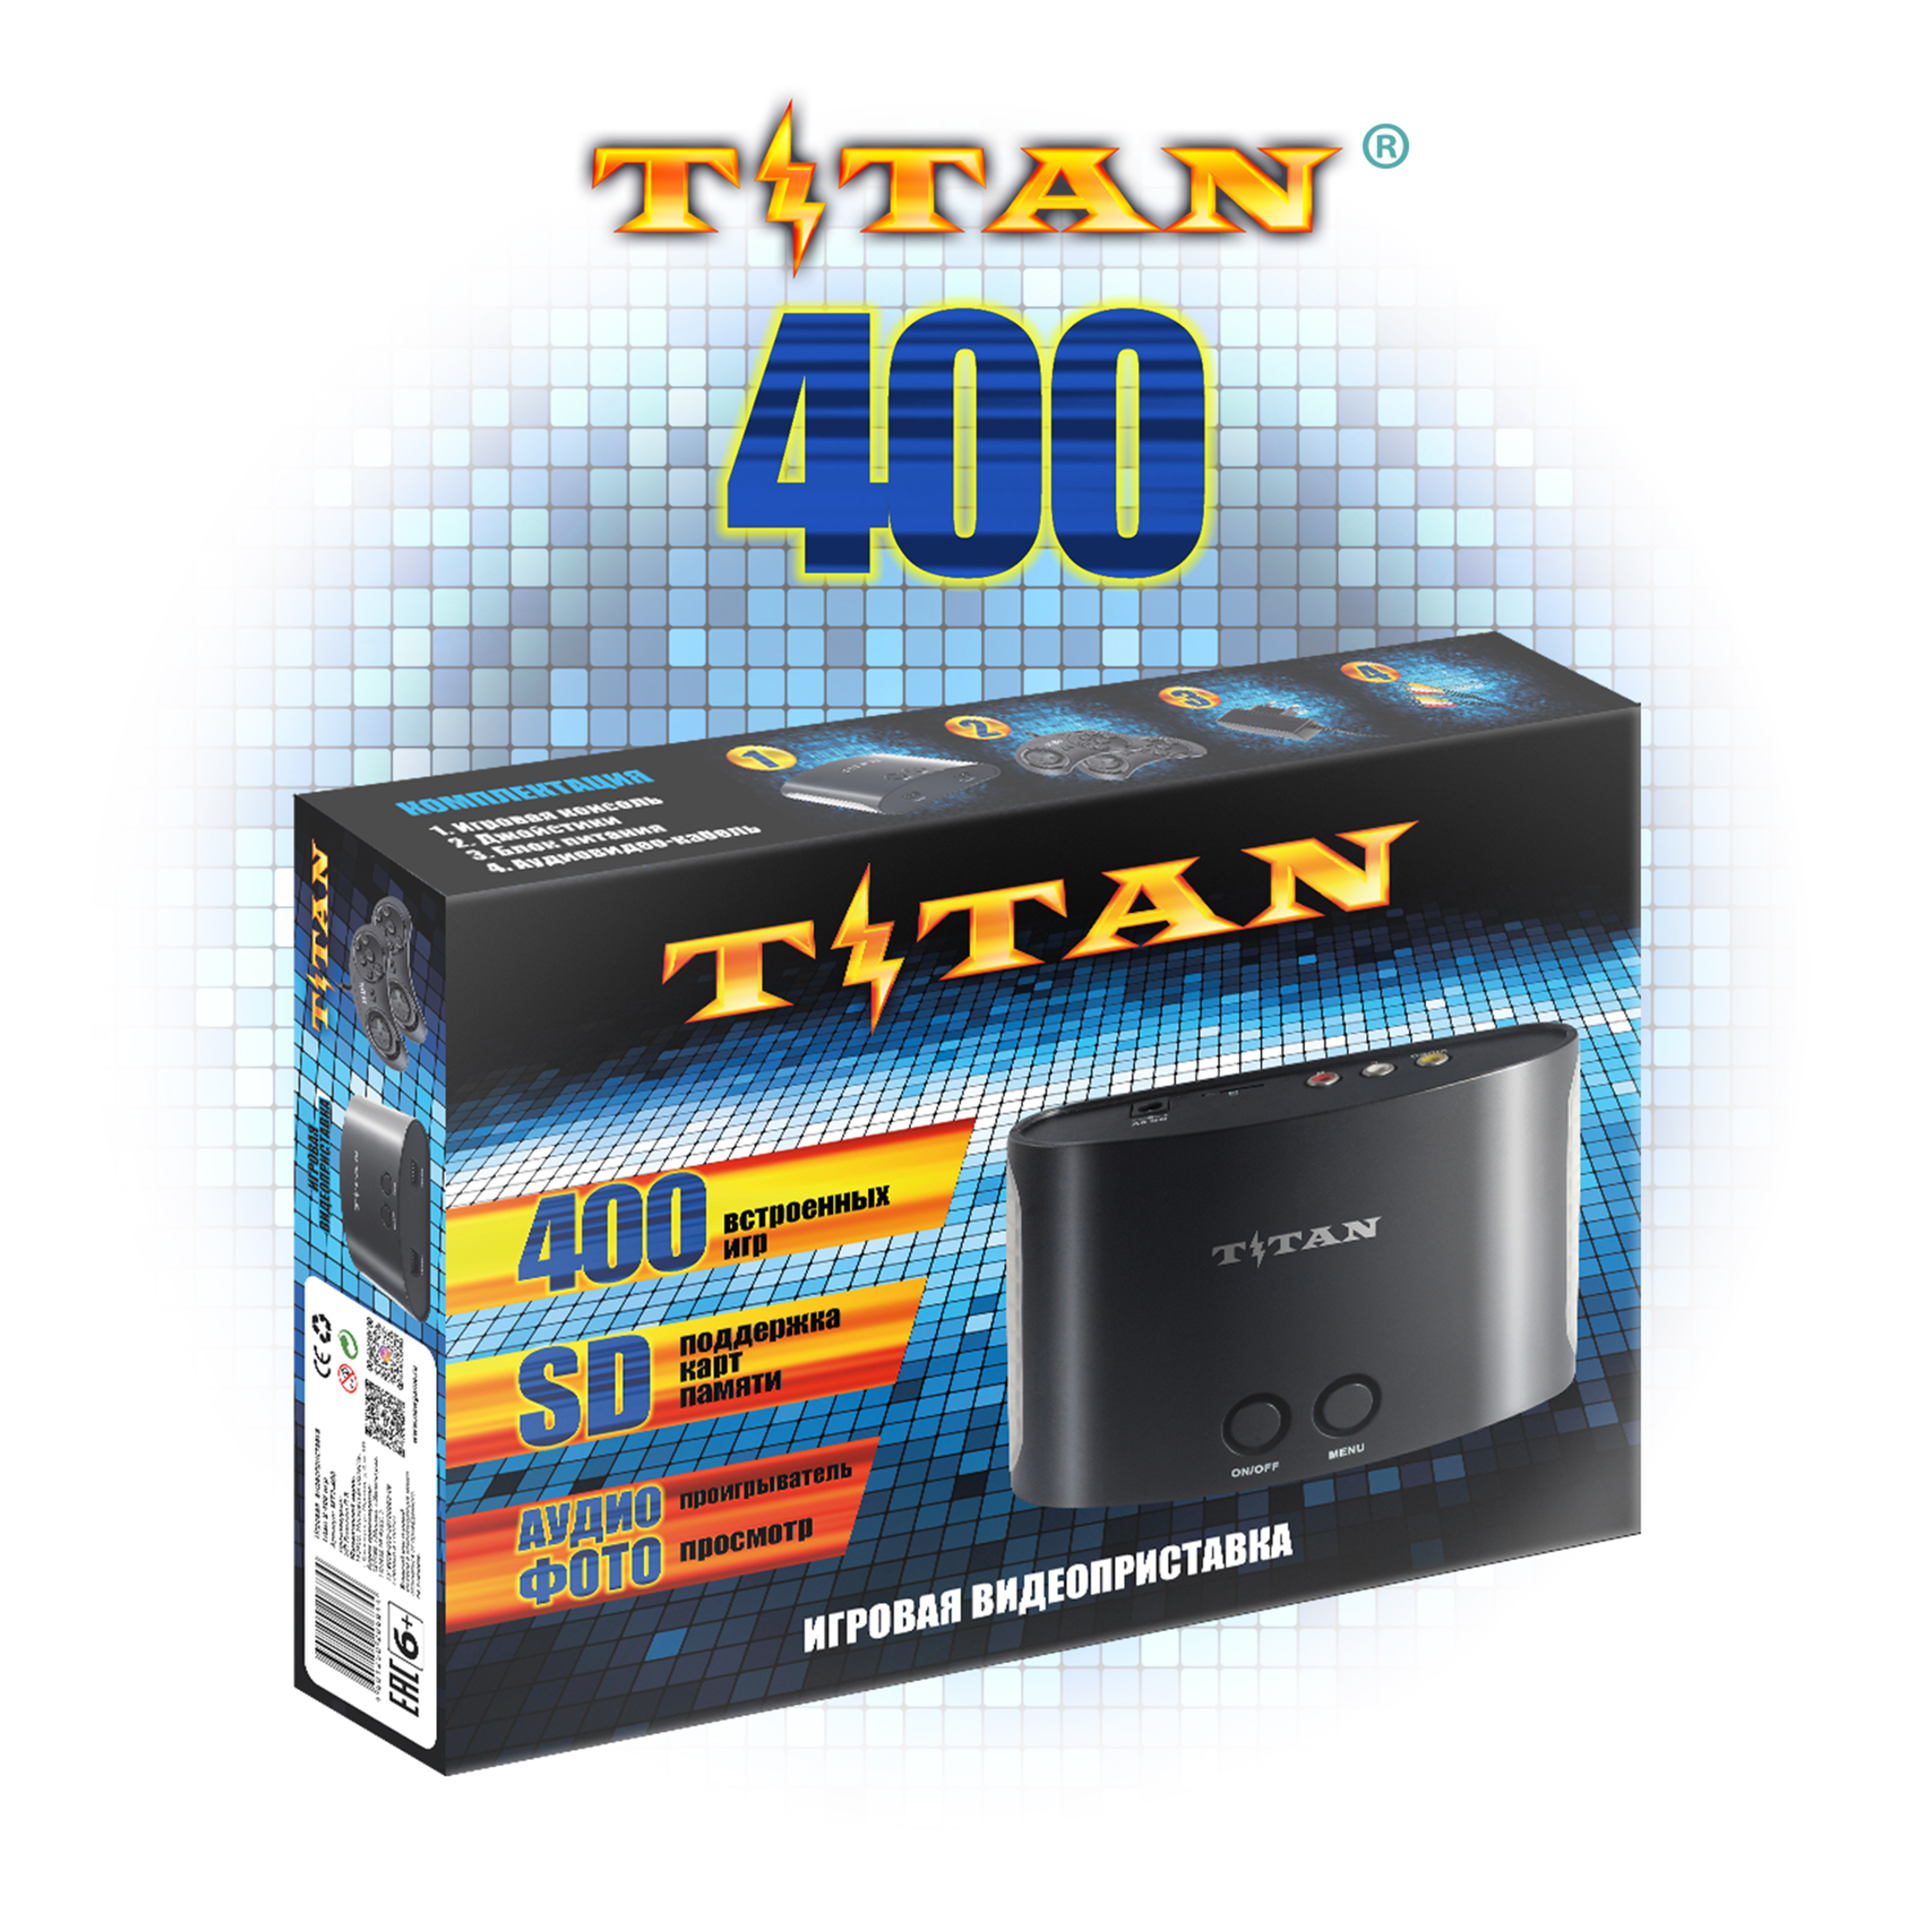 Игровая приставка TITAN 400 встроенных игр SEGA и DENDY - фото 1